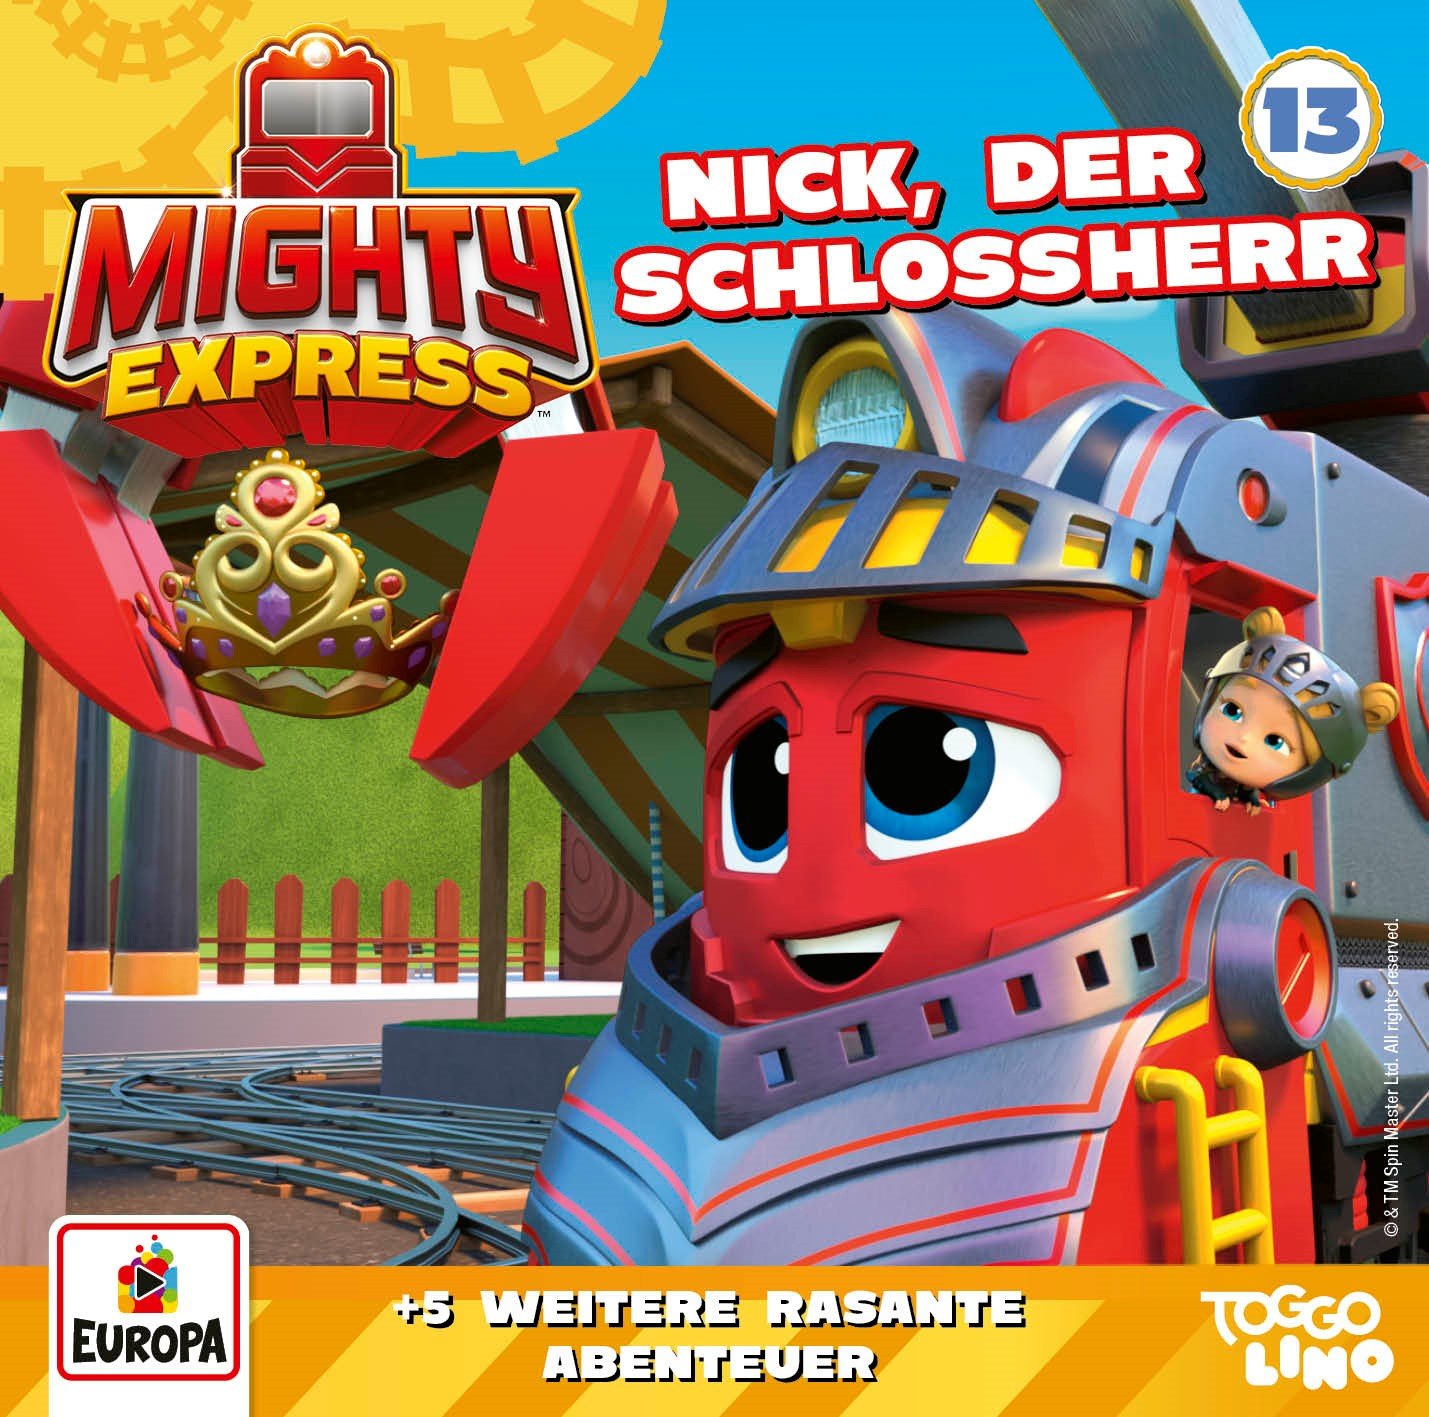 Mighty Express: Nick, der Schlossherr